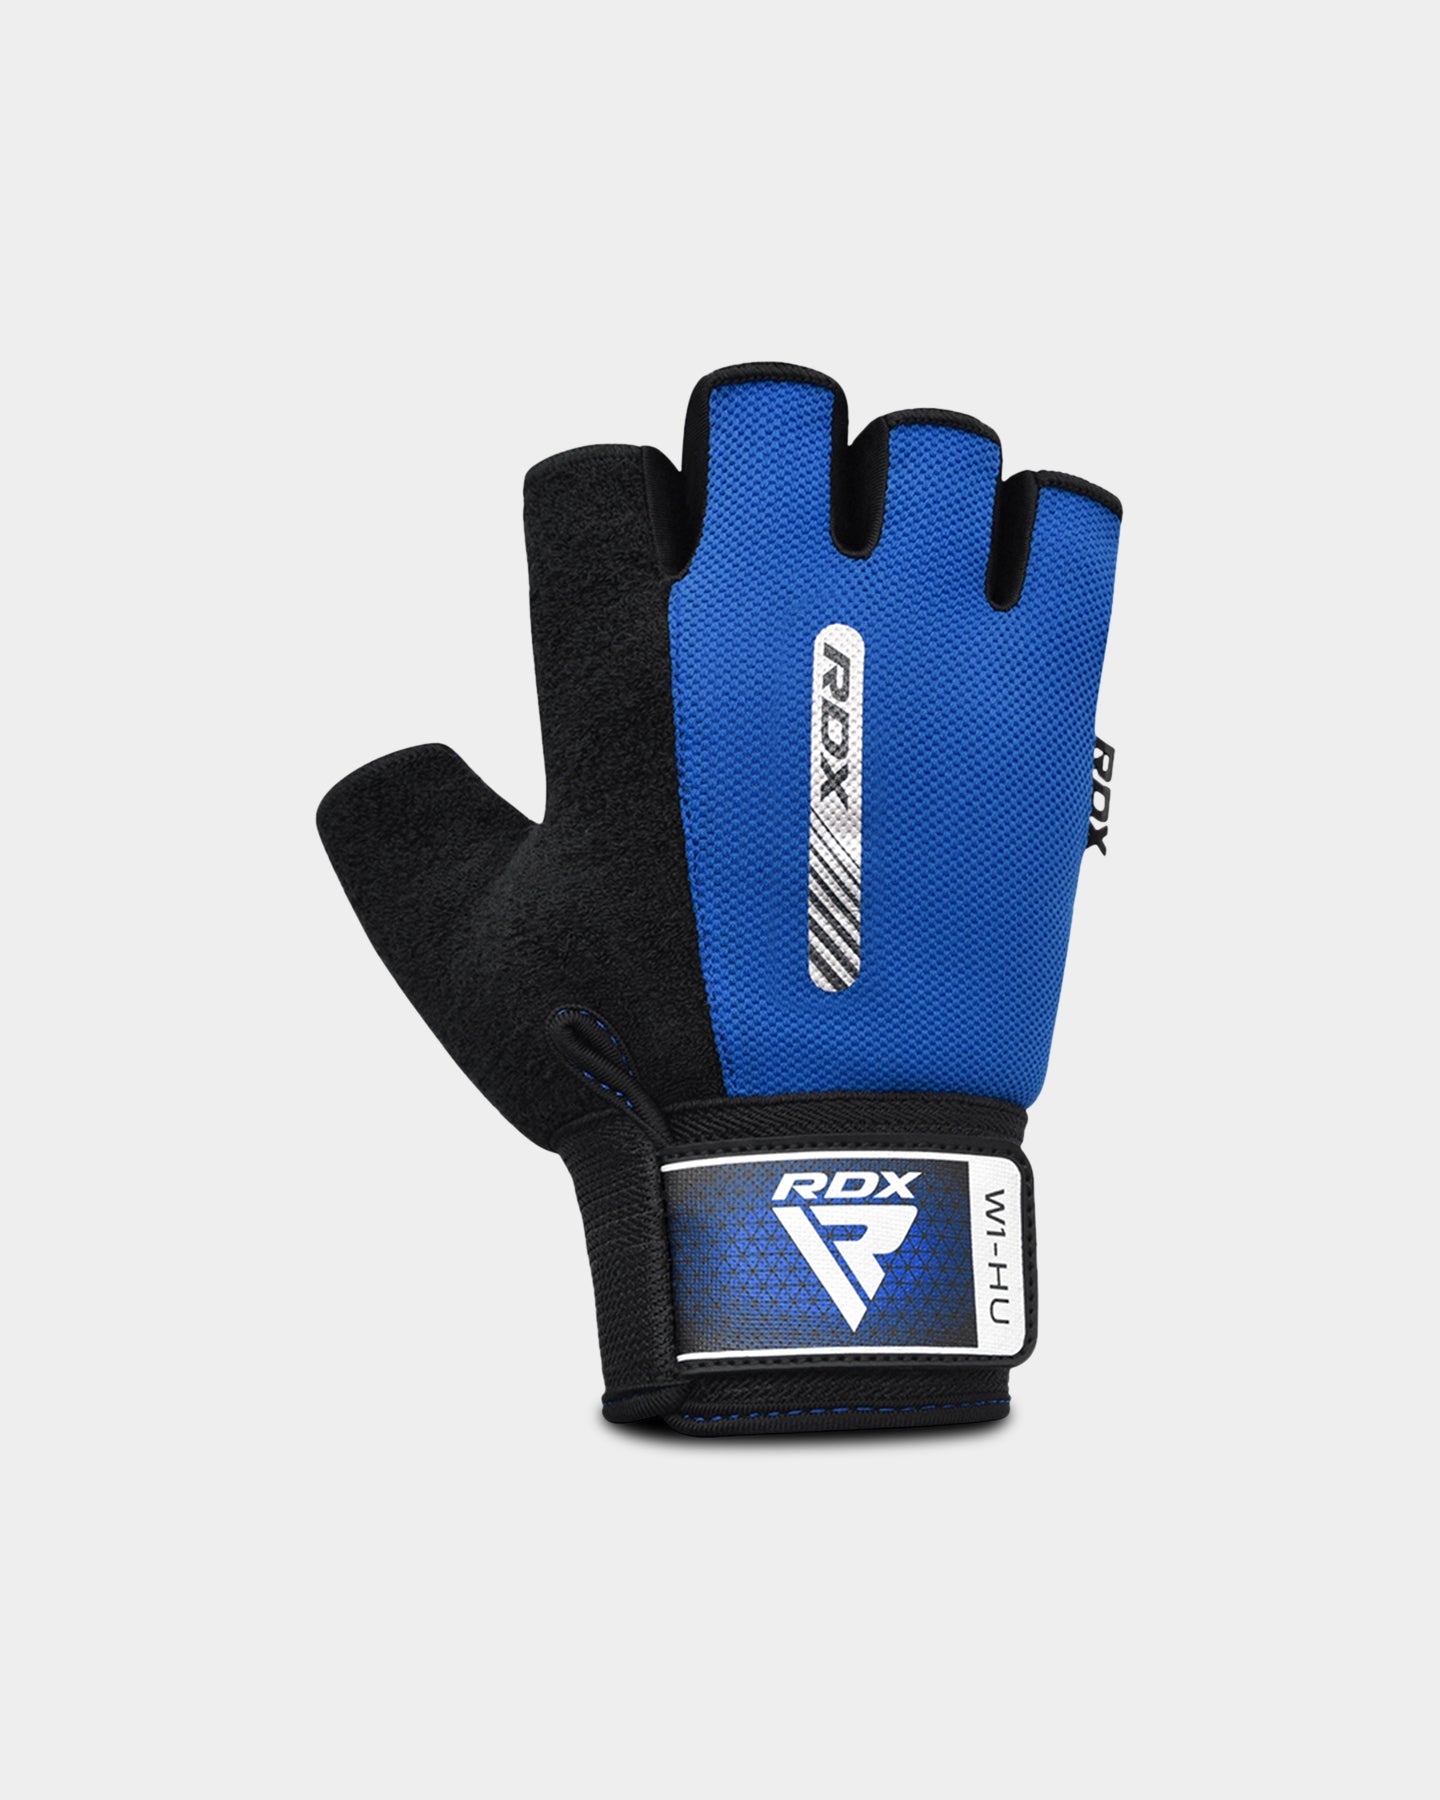 RDX Sports W1 Gym Workout Gloves, XL, Blue A2